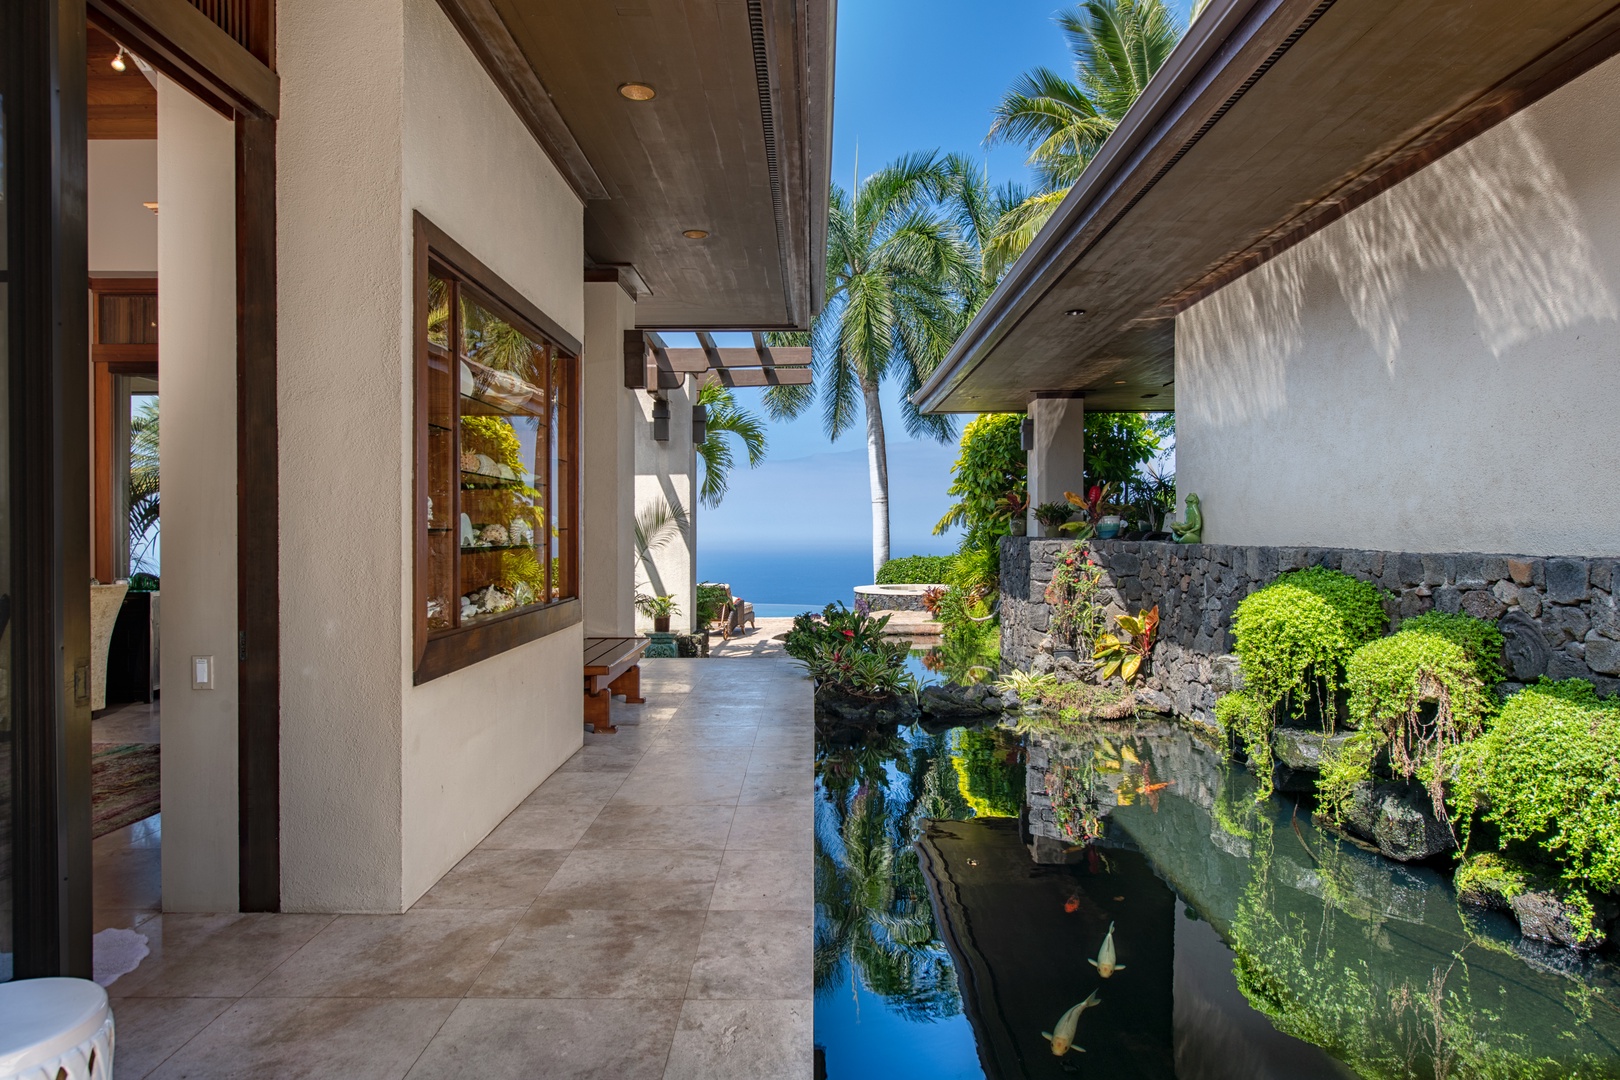 Kailua Kona Vacation Rentals, Hale Wailele** - French Limestone walkways connect each pavilion